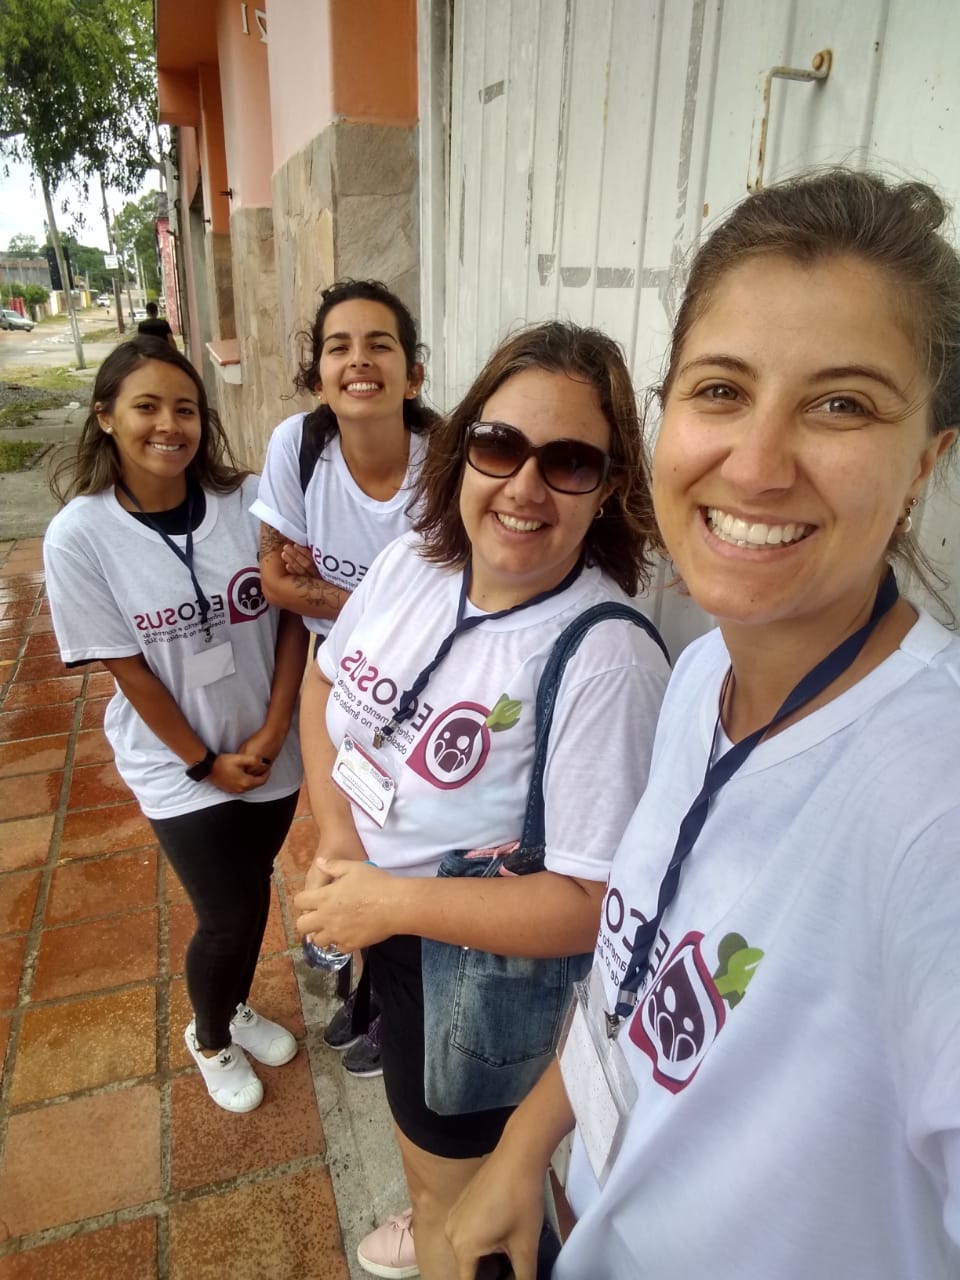 Entrevistadoras de Pelotas realizando trabalho de campo no bairro Dunas